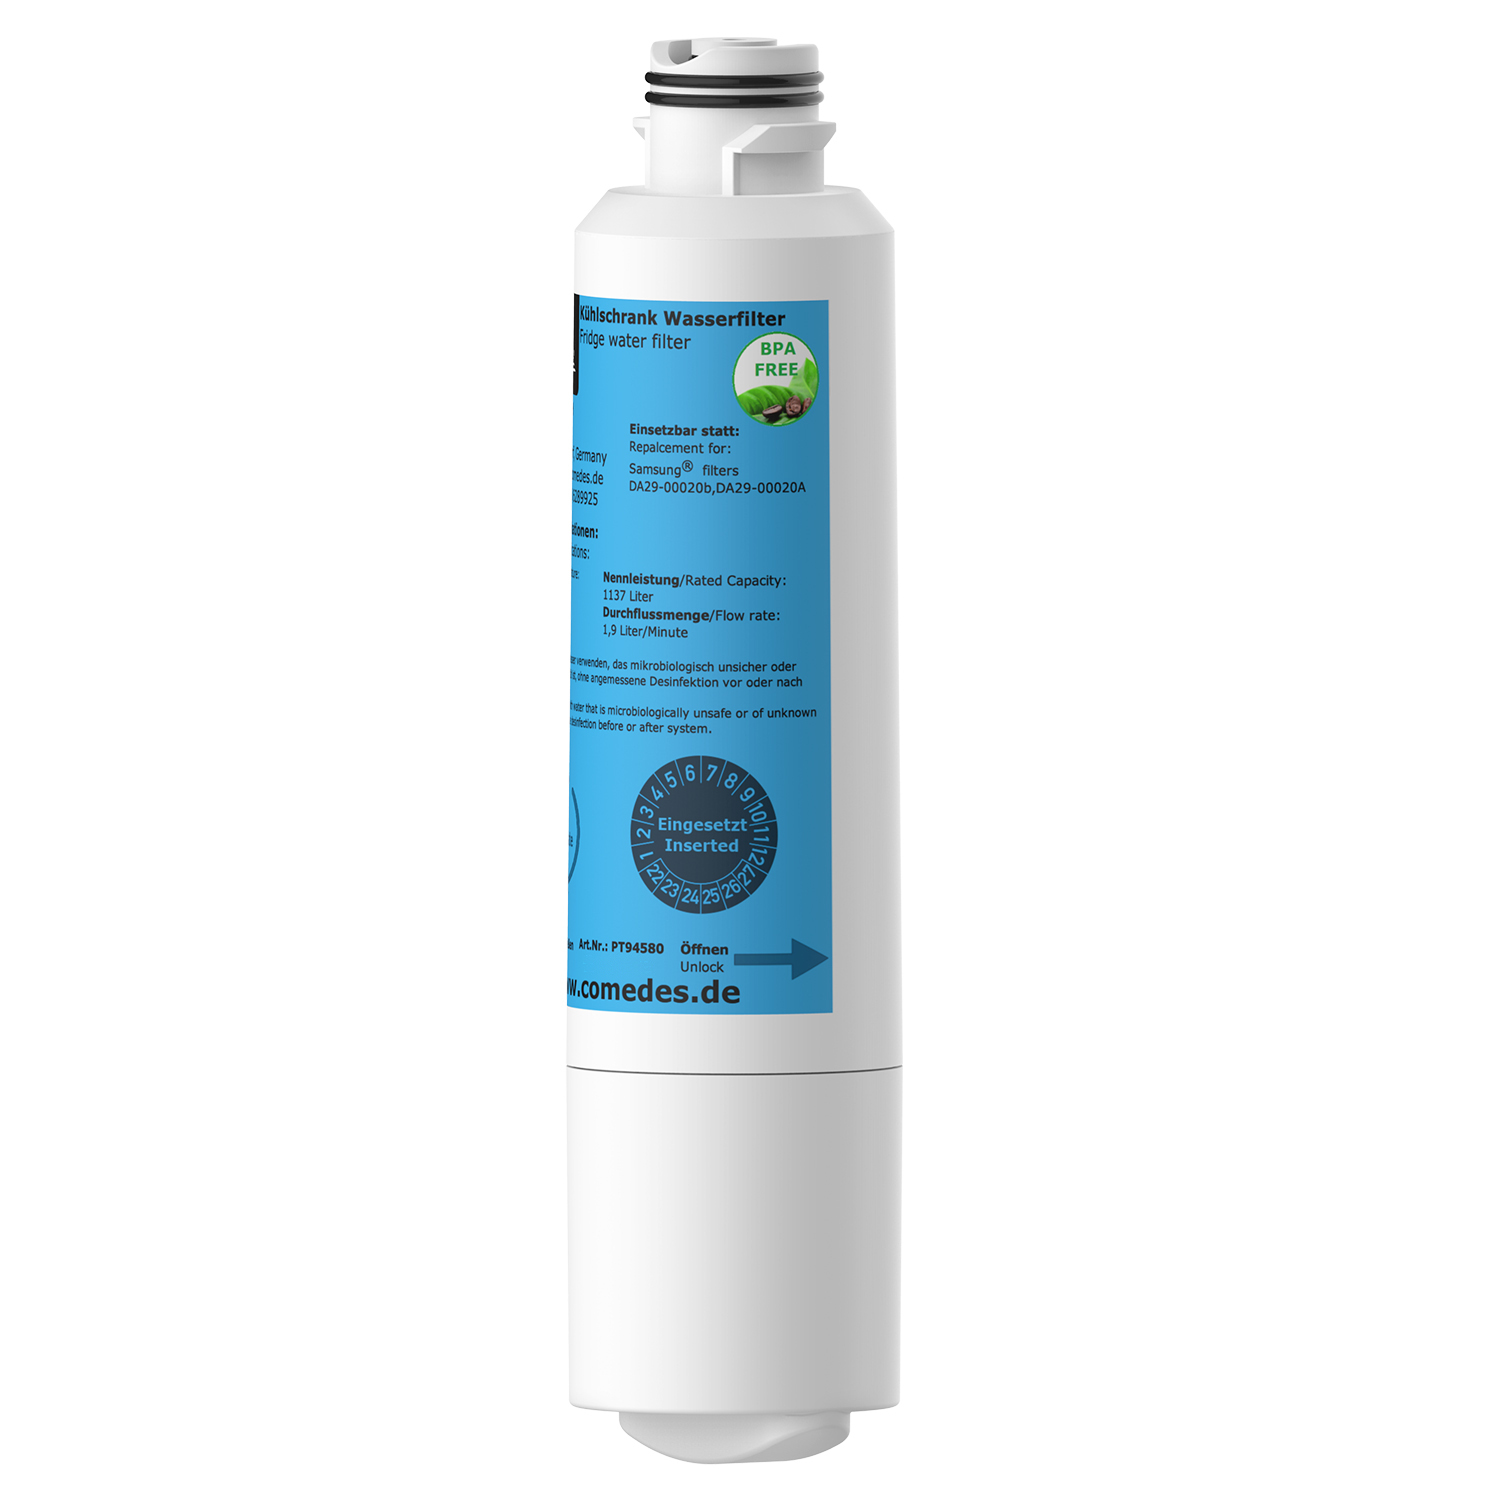 Wasserfilter Set COMEDES Kühlschränke Comedes 4er für passend Samsung (53 Filterkartusche mm)